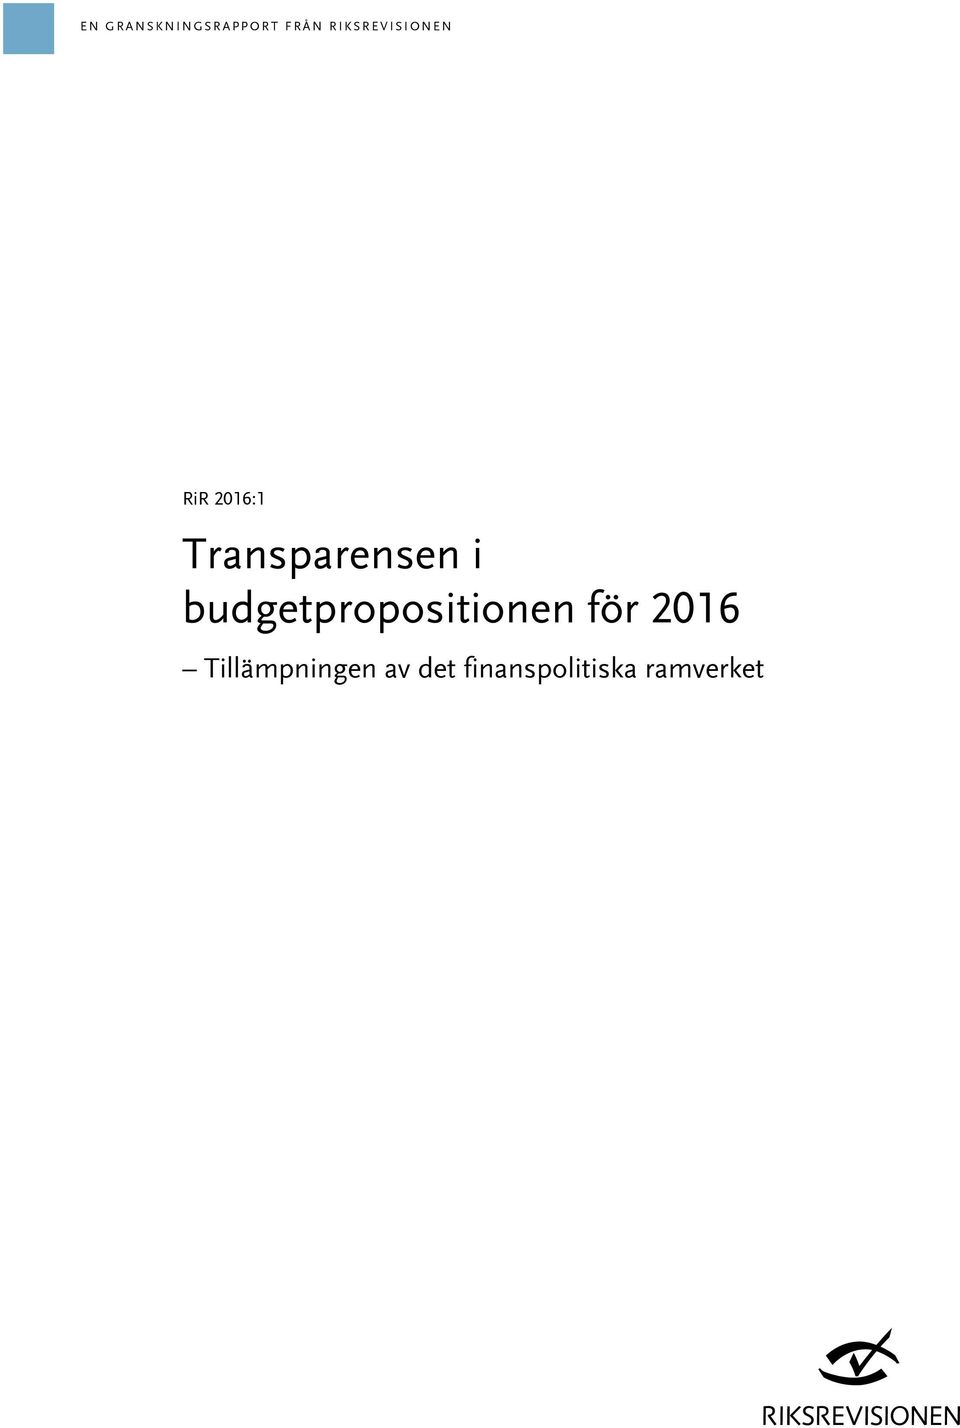 Transparensen i budgetpropositionen